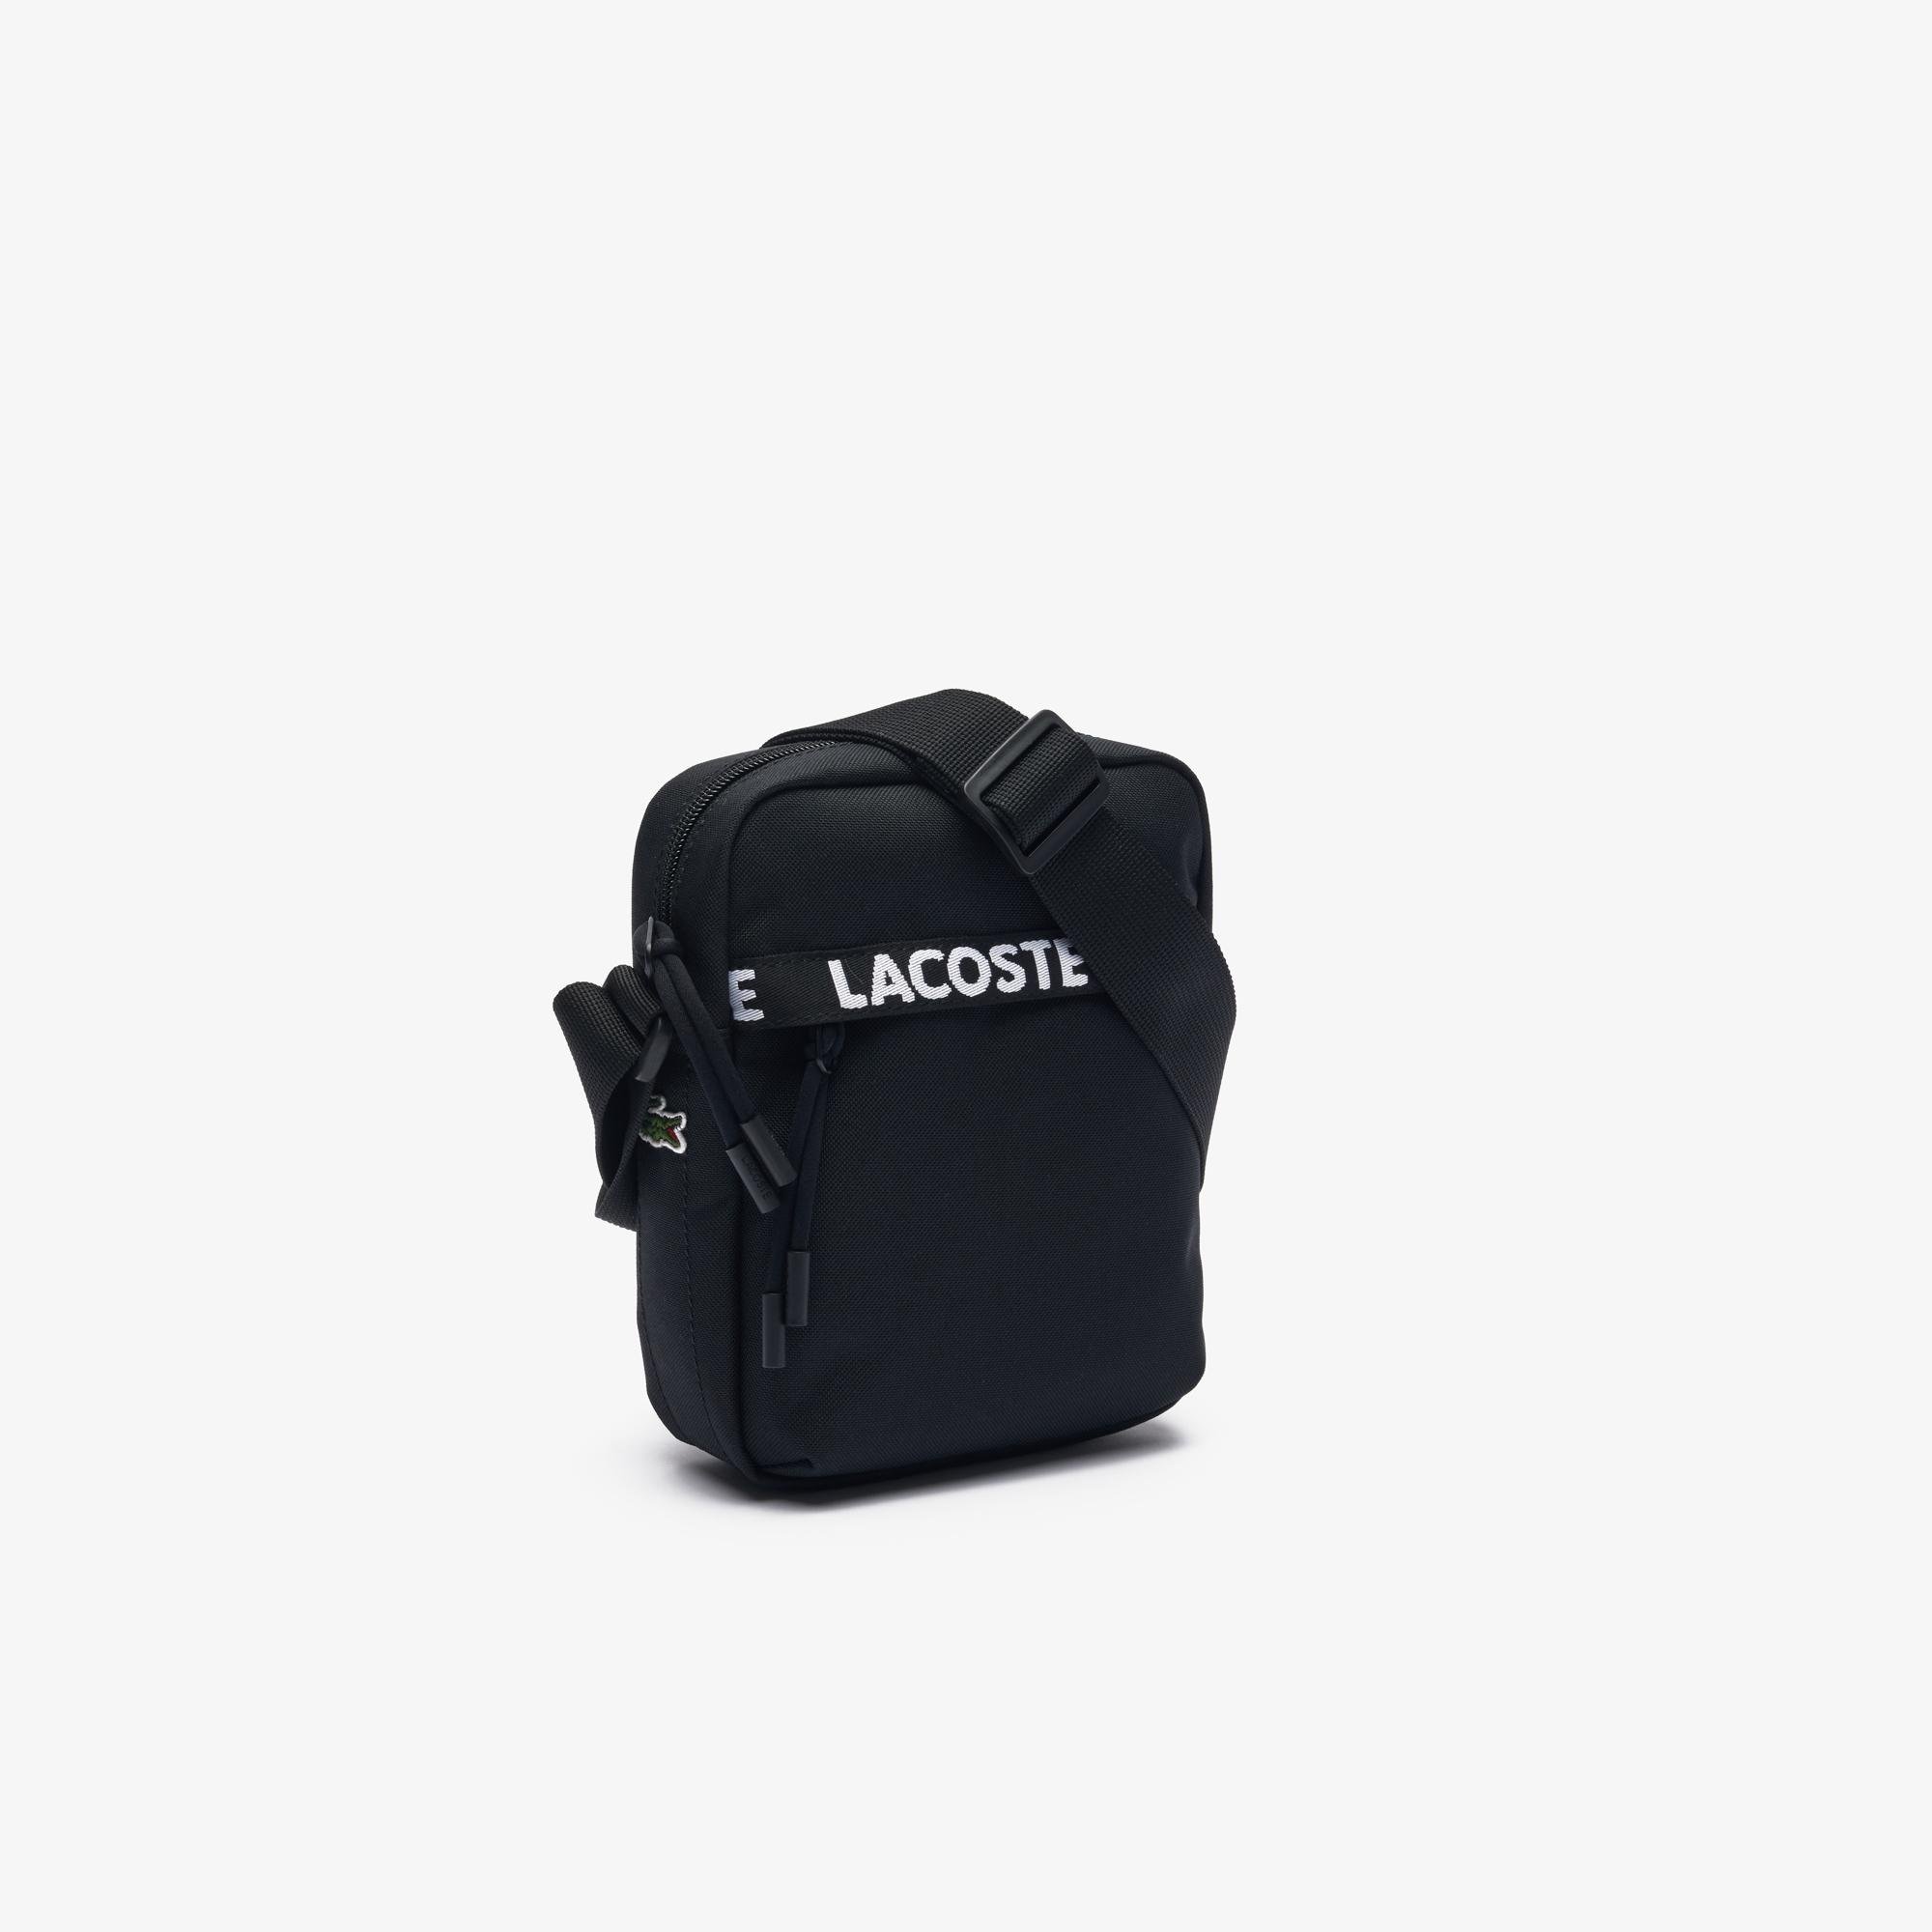 Lacoste Men's Bag